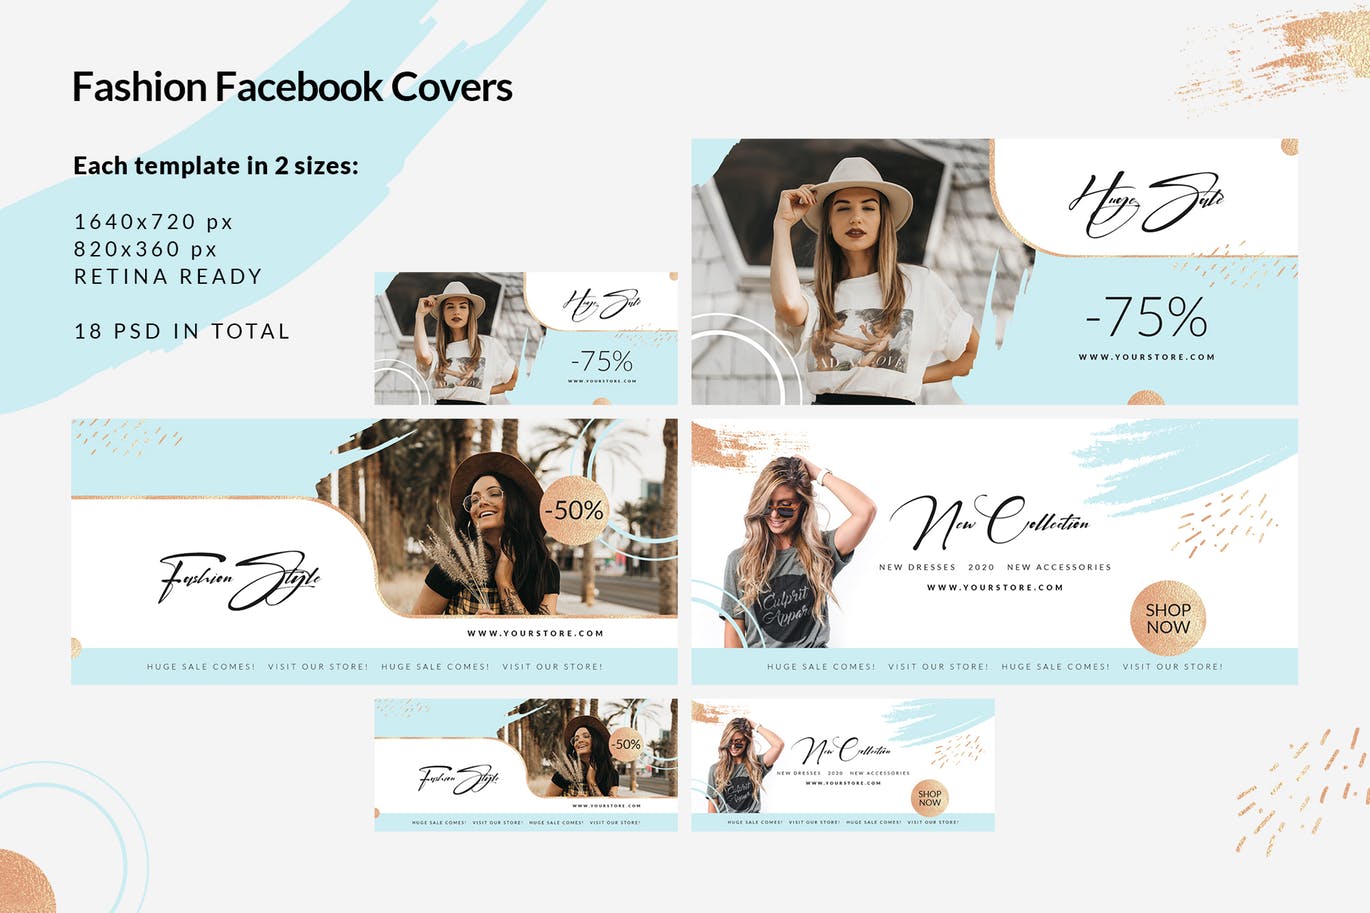 时尚品牌打折促销Facebook封面设计模板蚂蚁素材精选 Fashion Facebook Covers插图(1)